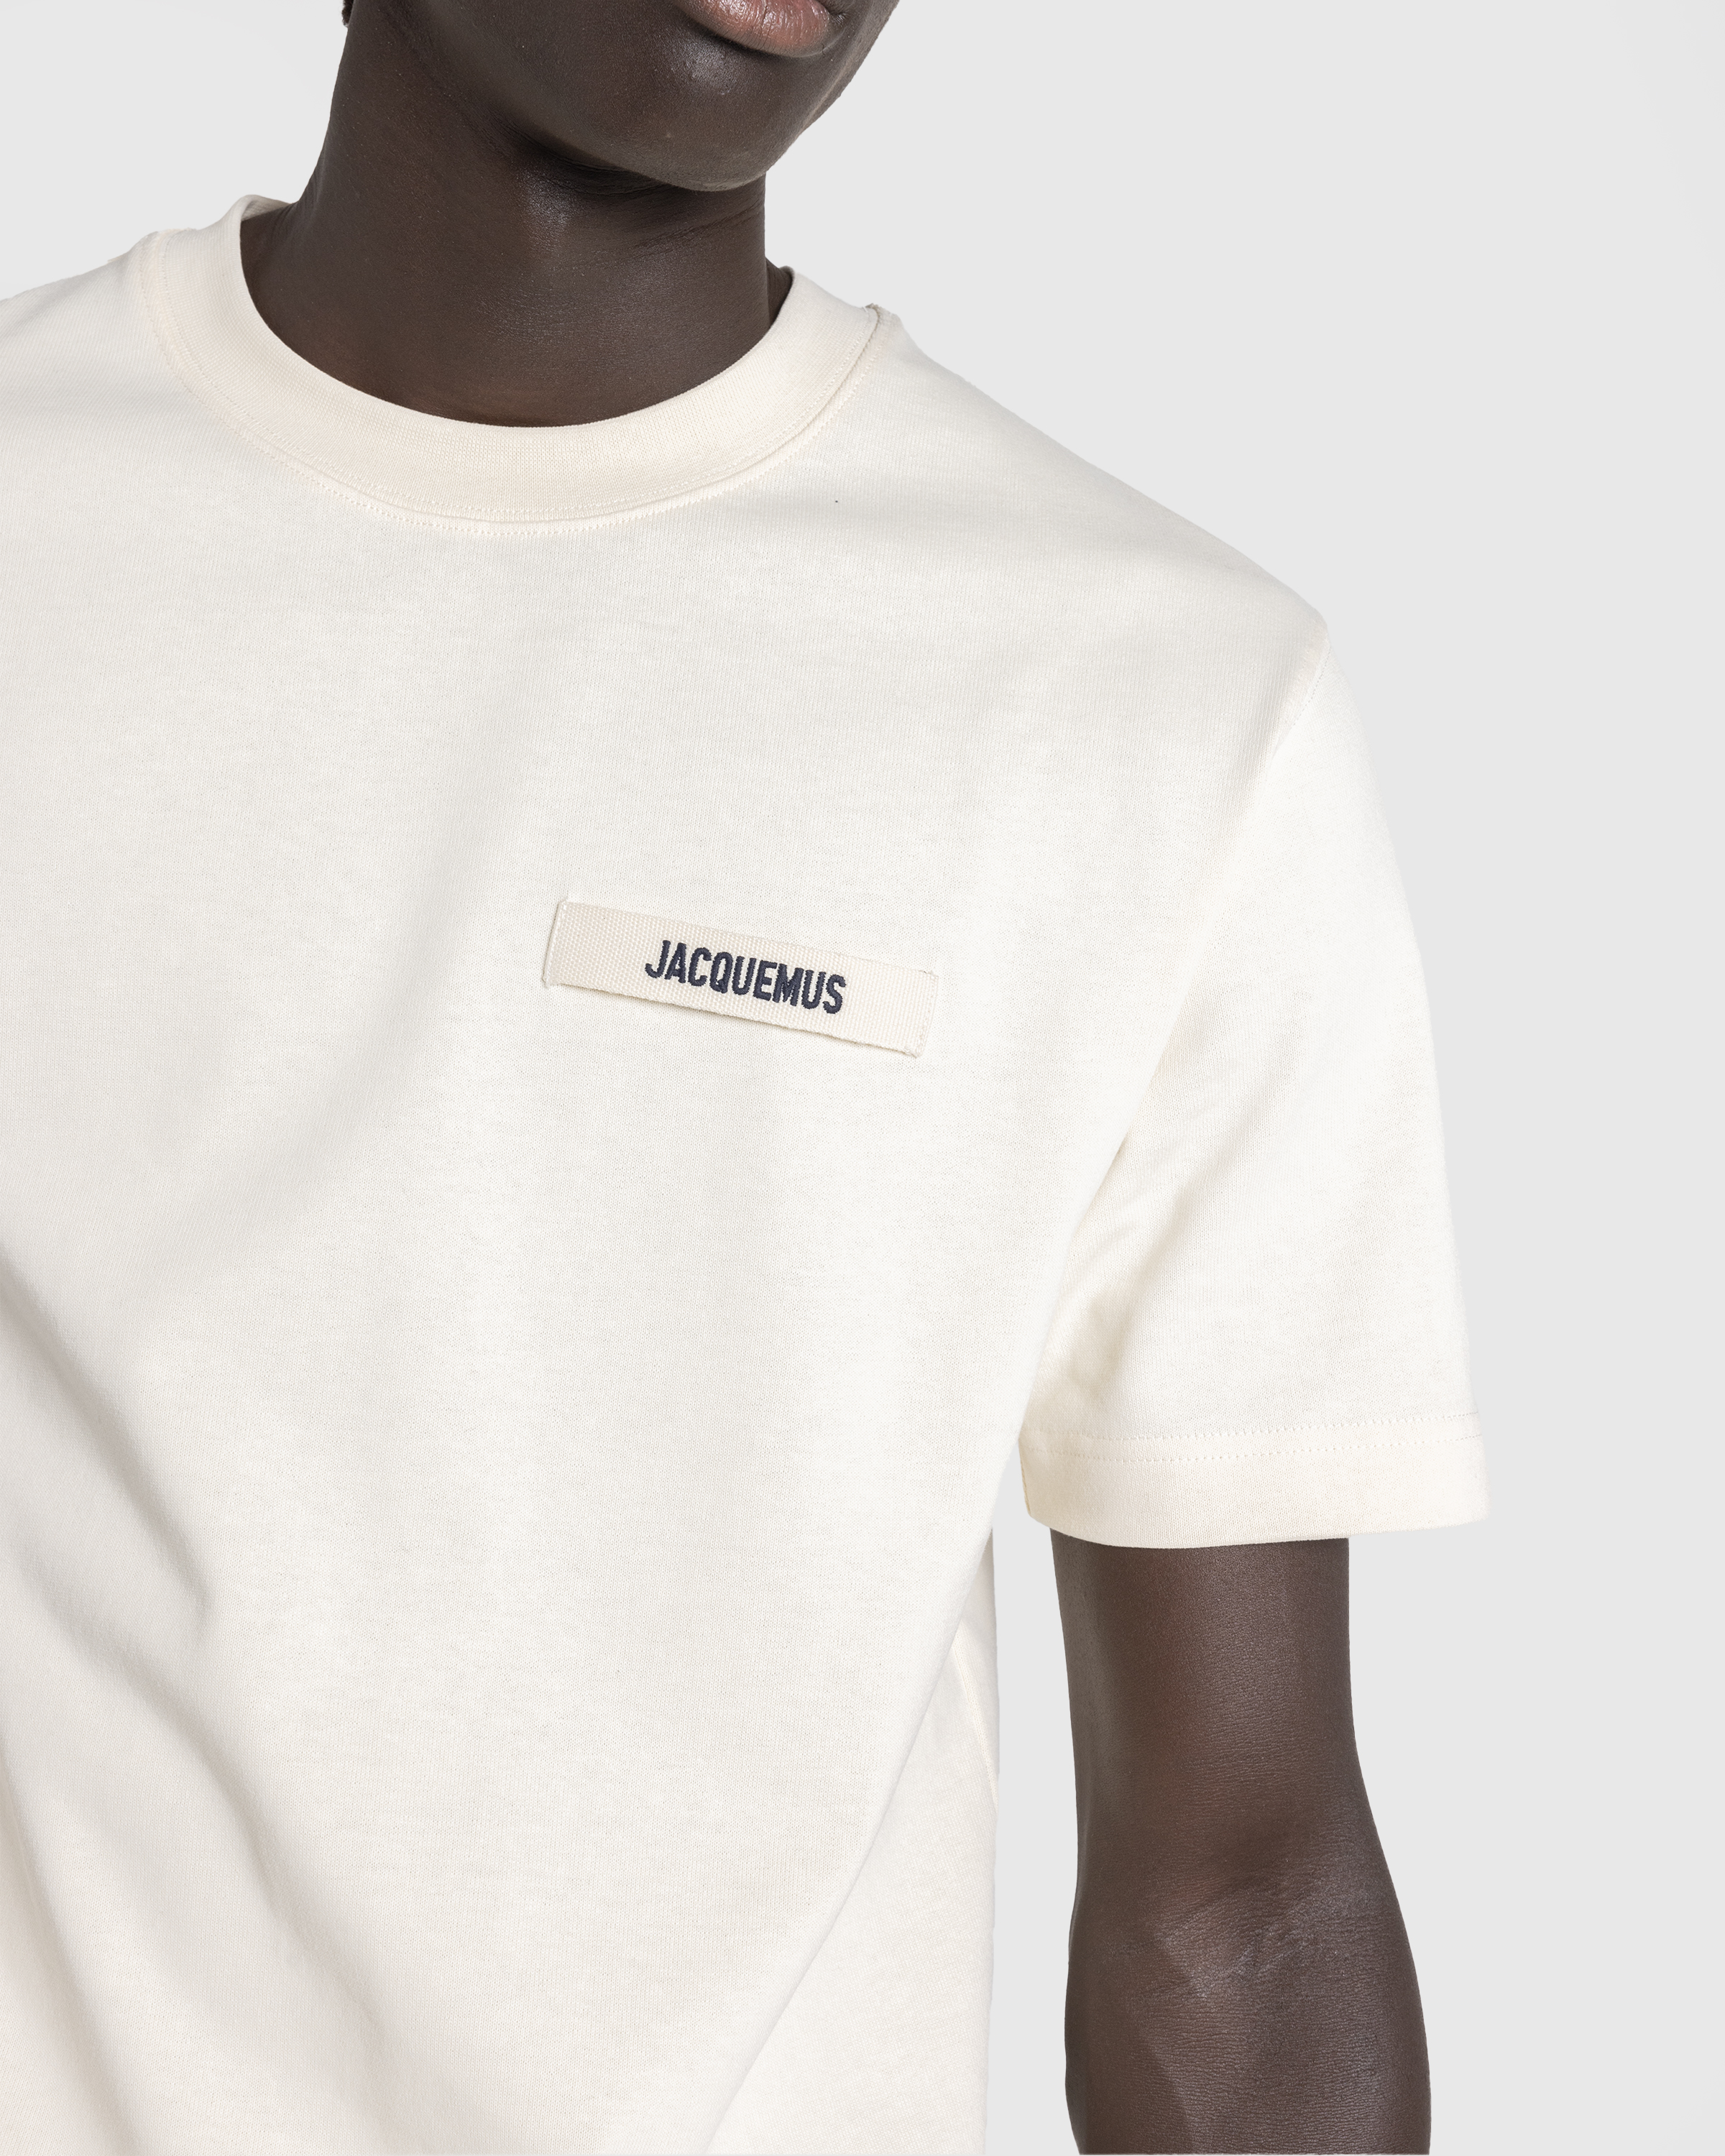 JACQUEMUS – Le T-Shirt Gros Grain Beige - T-Shirts - Beige - Image 5